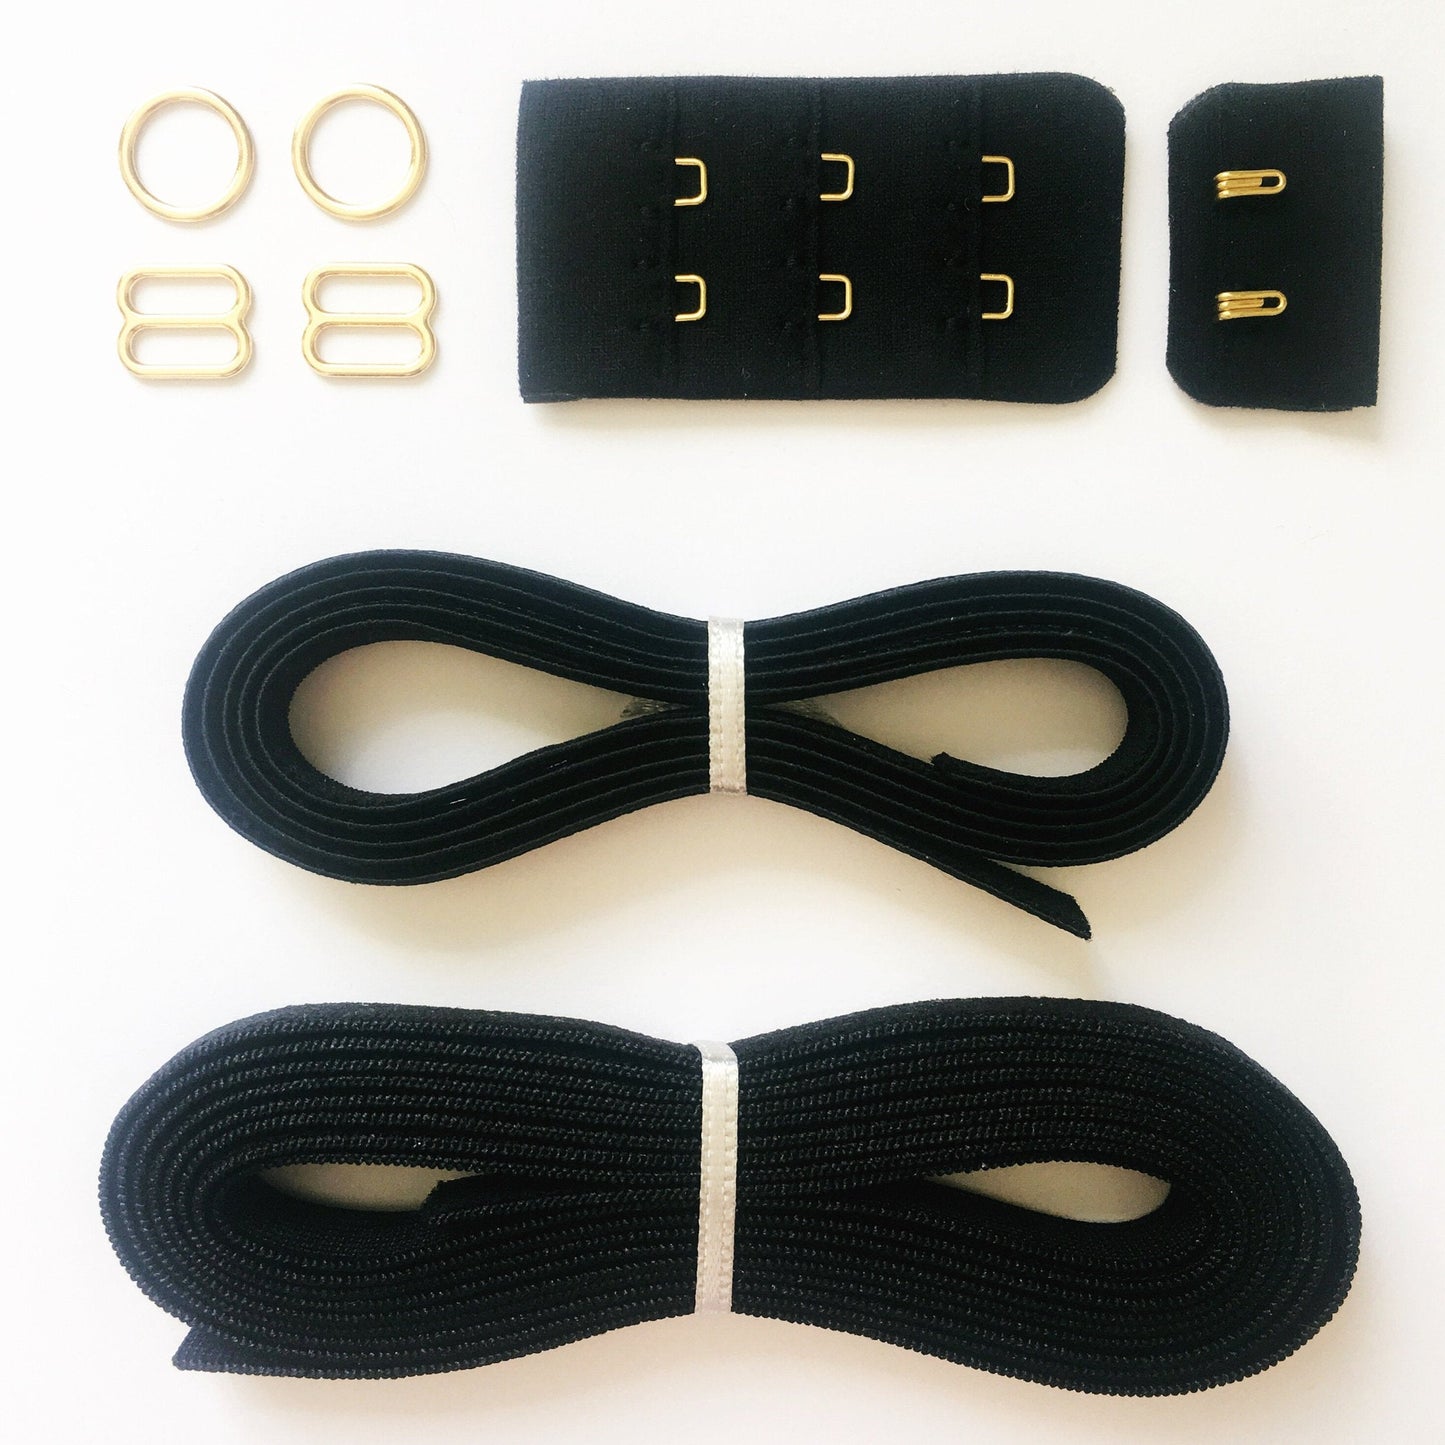 Bralette & Brief Findings Kit in Black & Gold | DIY Bra Kits